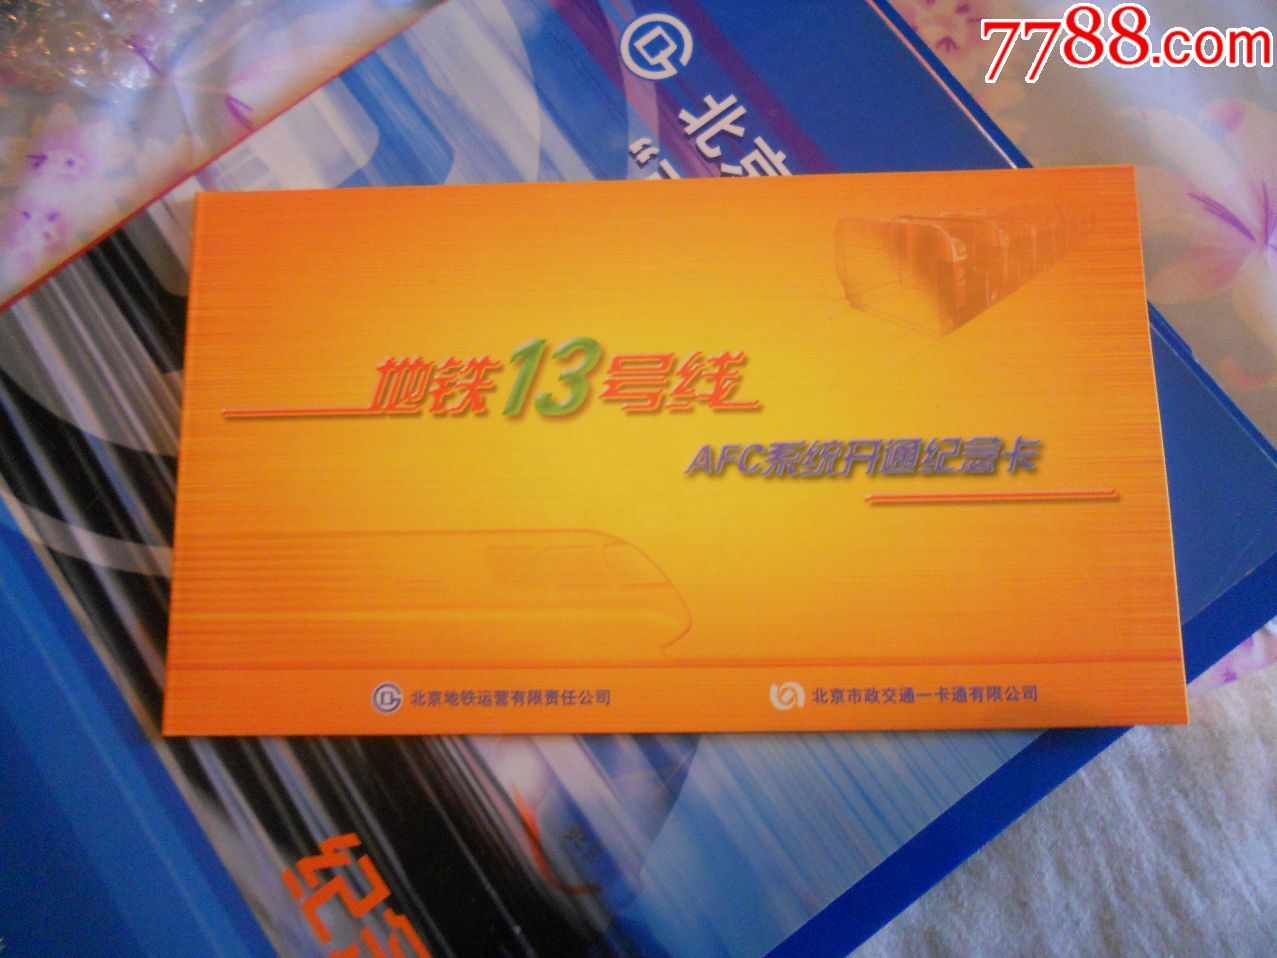 北京地铁13号线AFC开通纪念卡(2枚卡)